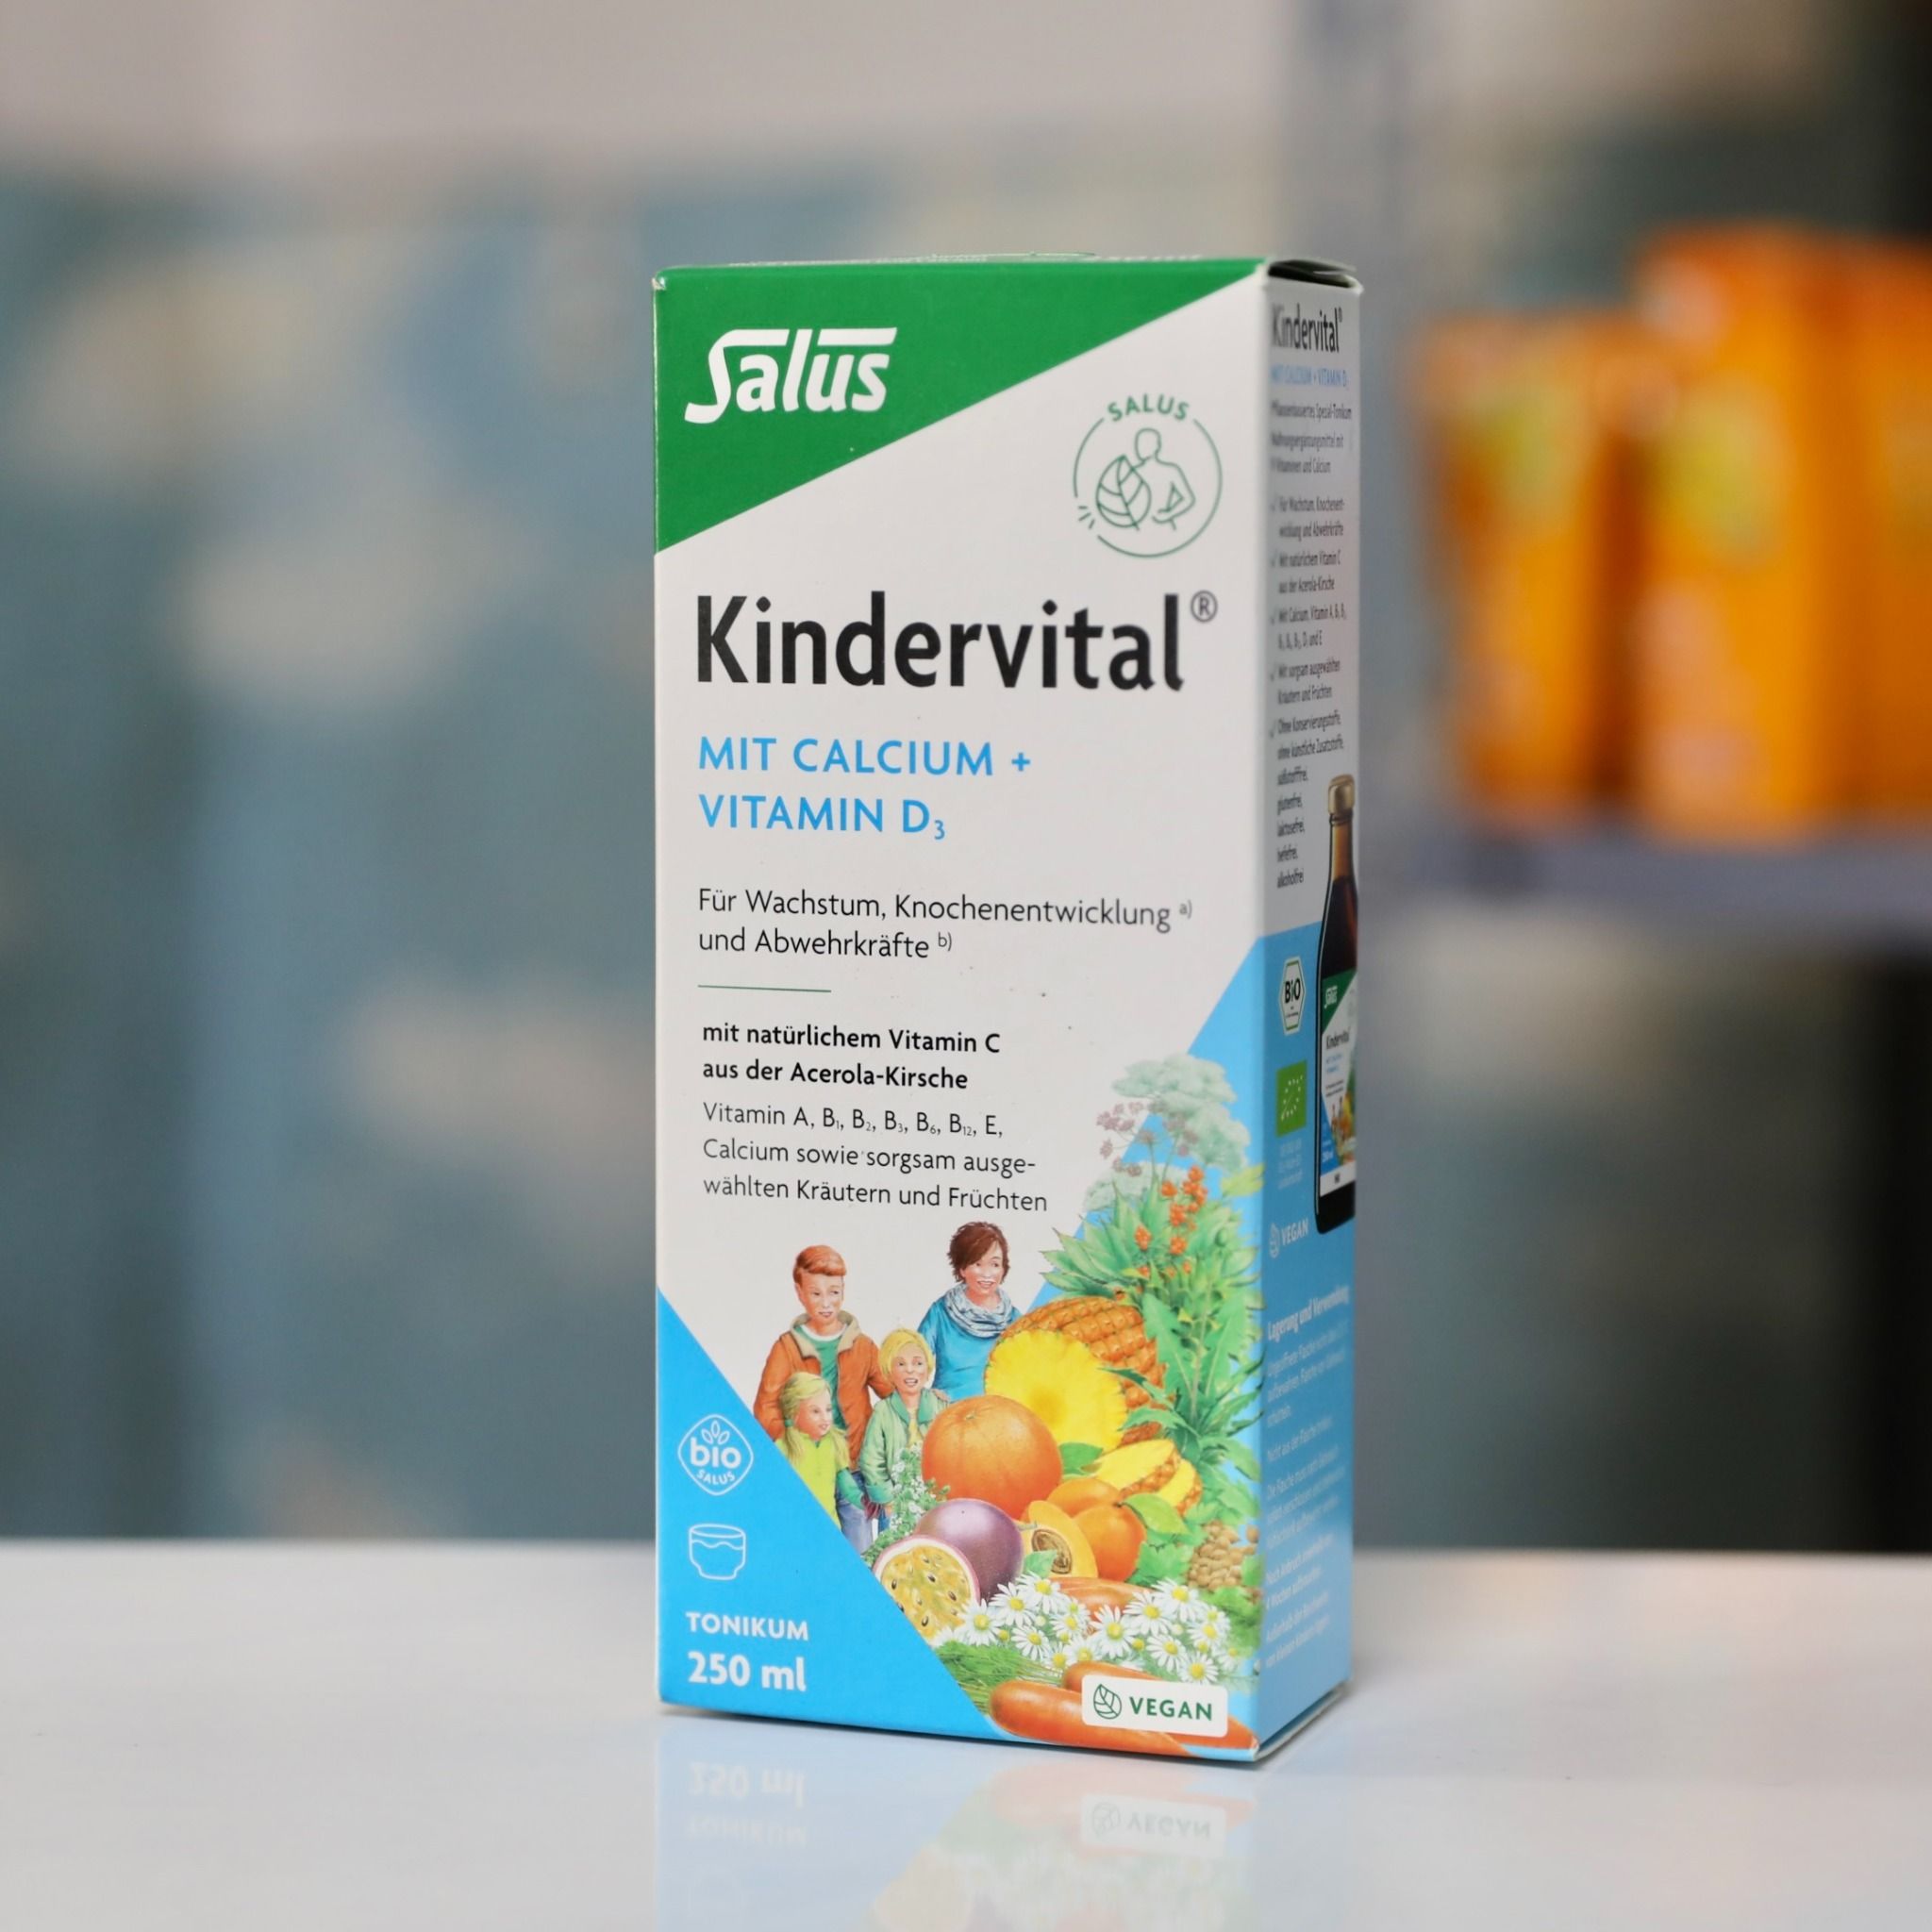  Siro Kindervital bổ sung Canxi và Vitamin D3 cho bé trên 3 tuổi, 250 ml 